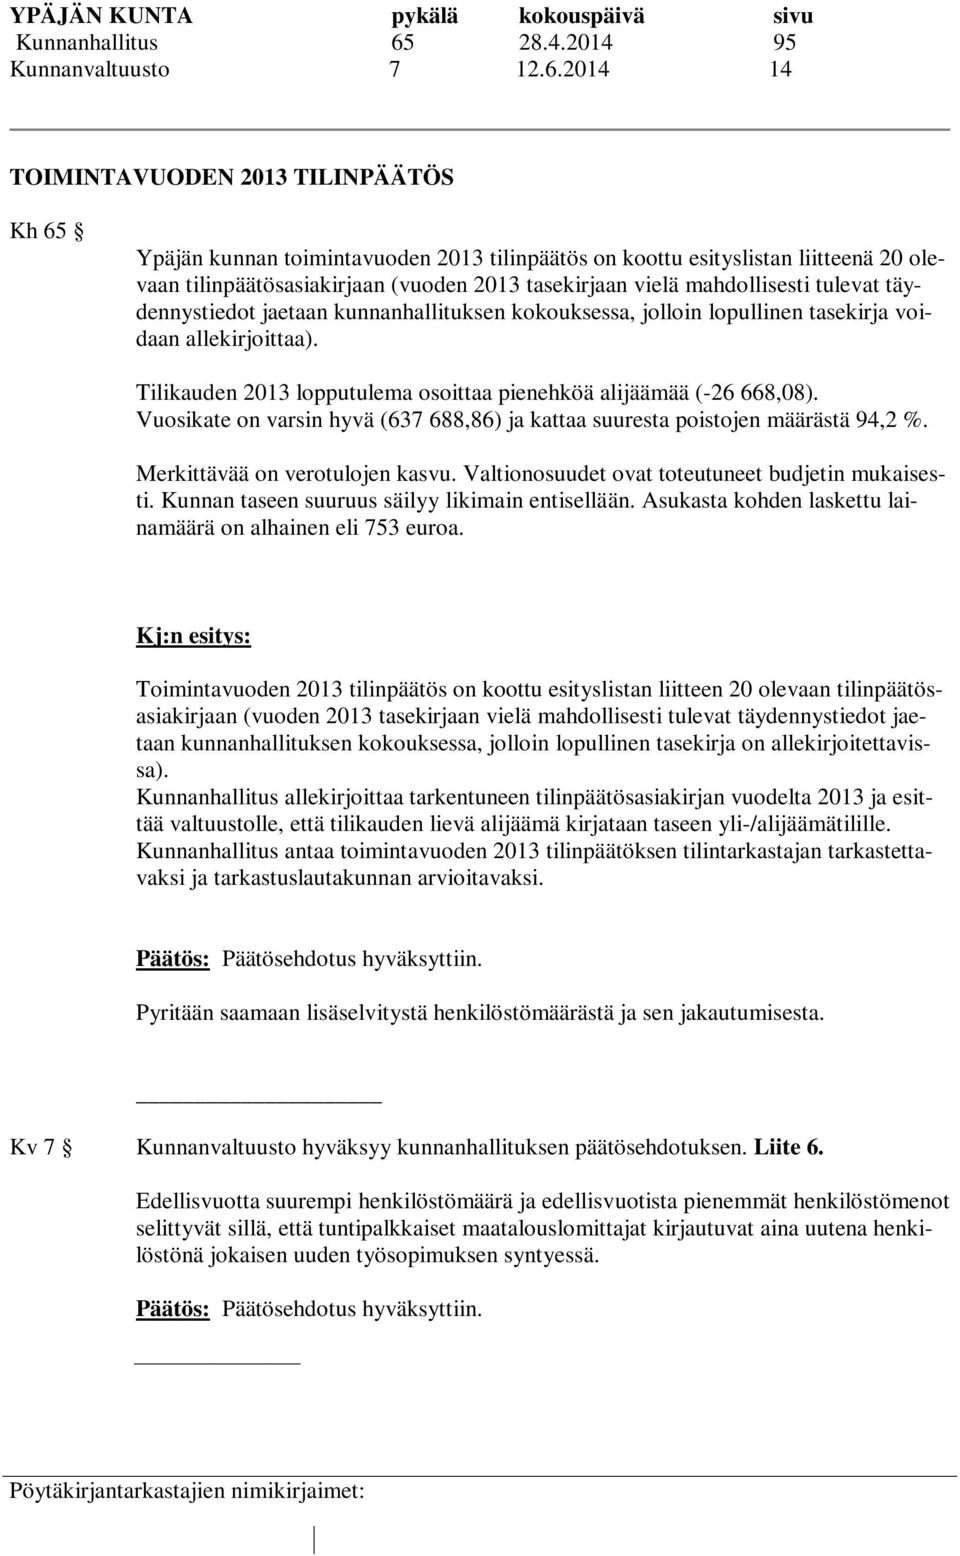 2014 14 TOIMINTAVUODEN 2013 TILINPÄÄTÖS Kh 65 Ypäjän kunnan toimintavuoden 2013 tilinpäätös on koottu esityslistan liitteenä 20 olevaan tilinpäätösasiakirjaan (vuoden 2013 tasekirjaan vielä